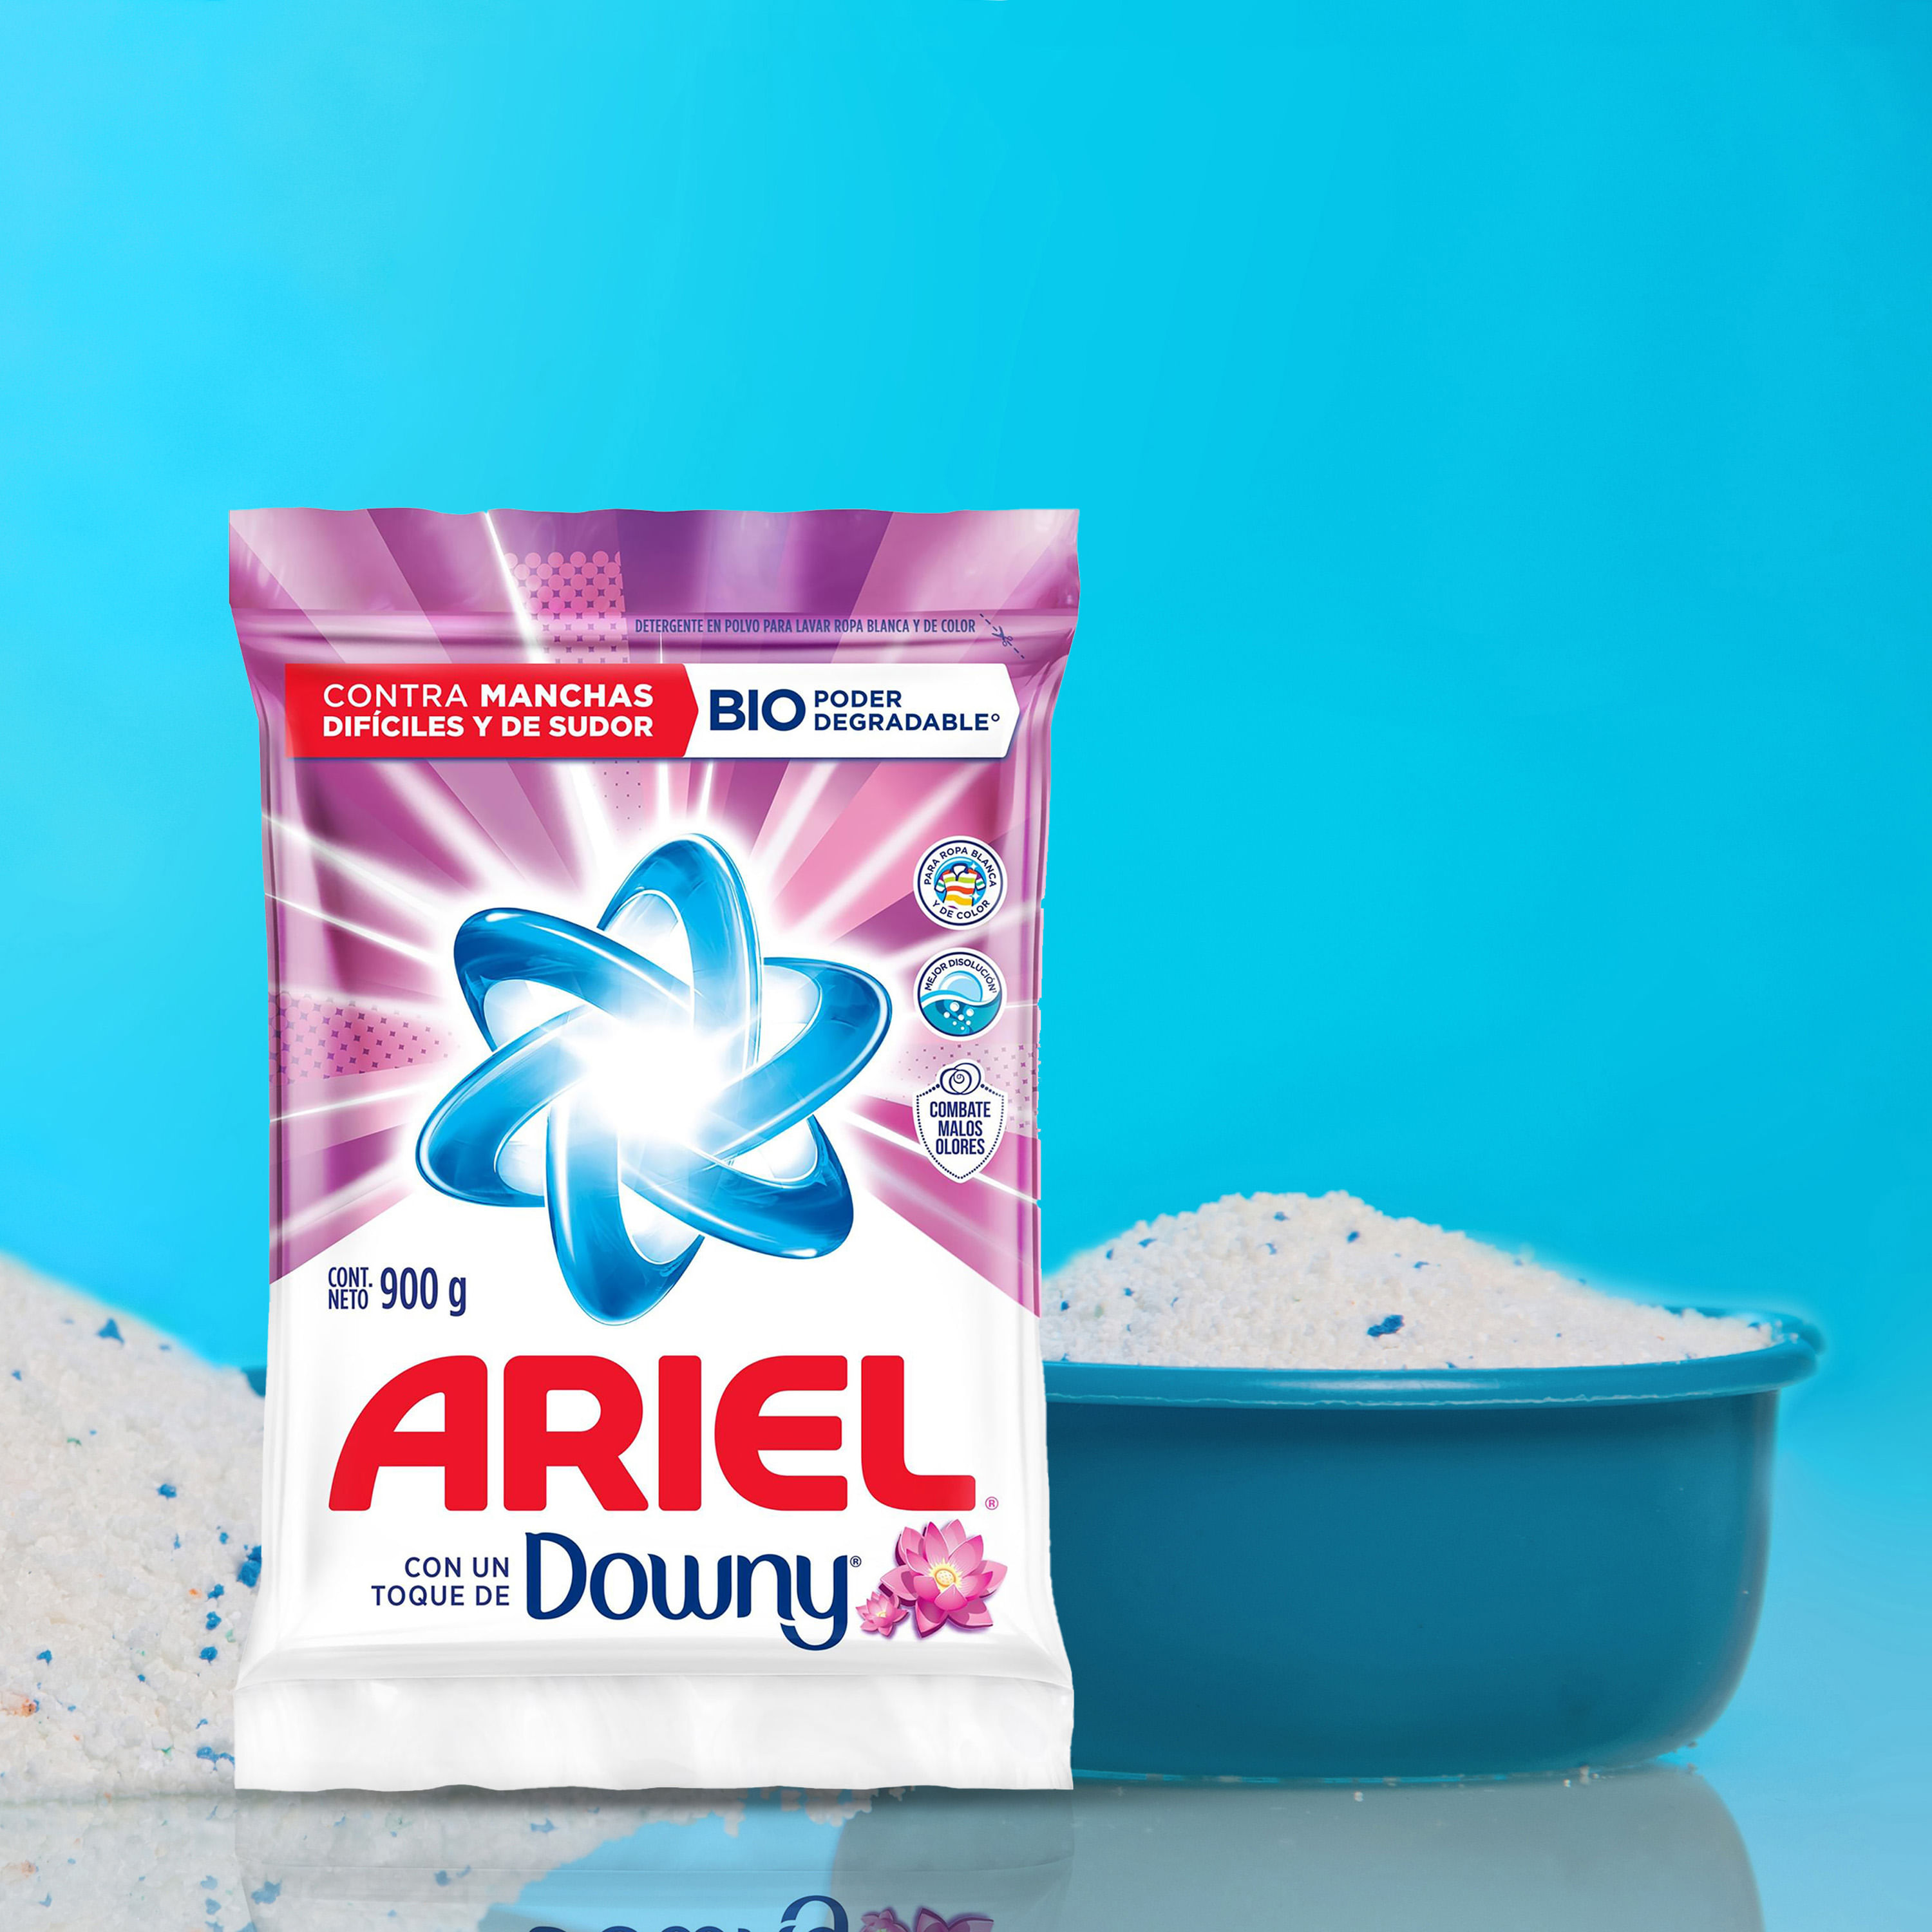 Ariel Detergente en Polvo con un Toque de Downy 8.8 kg / 110